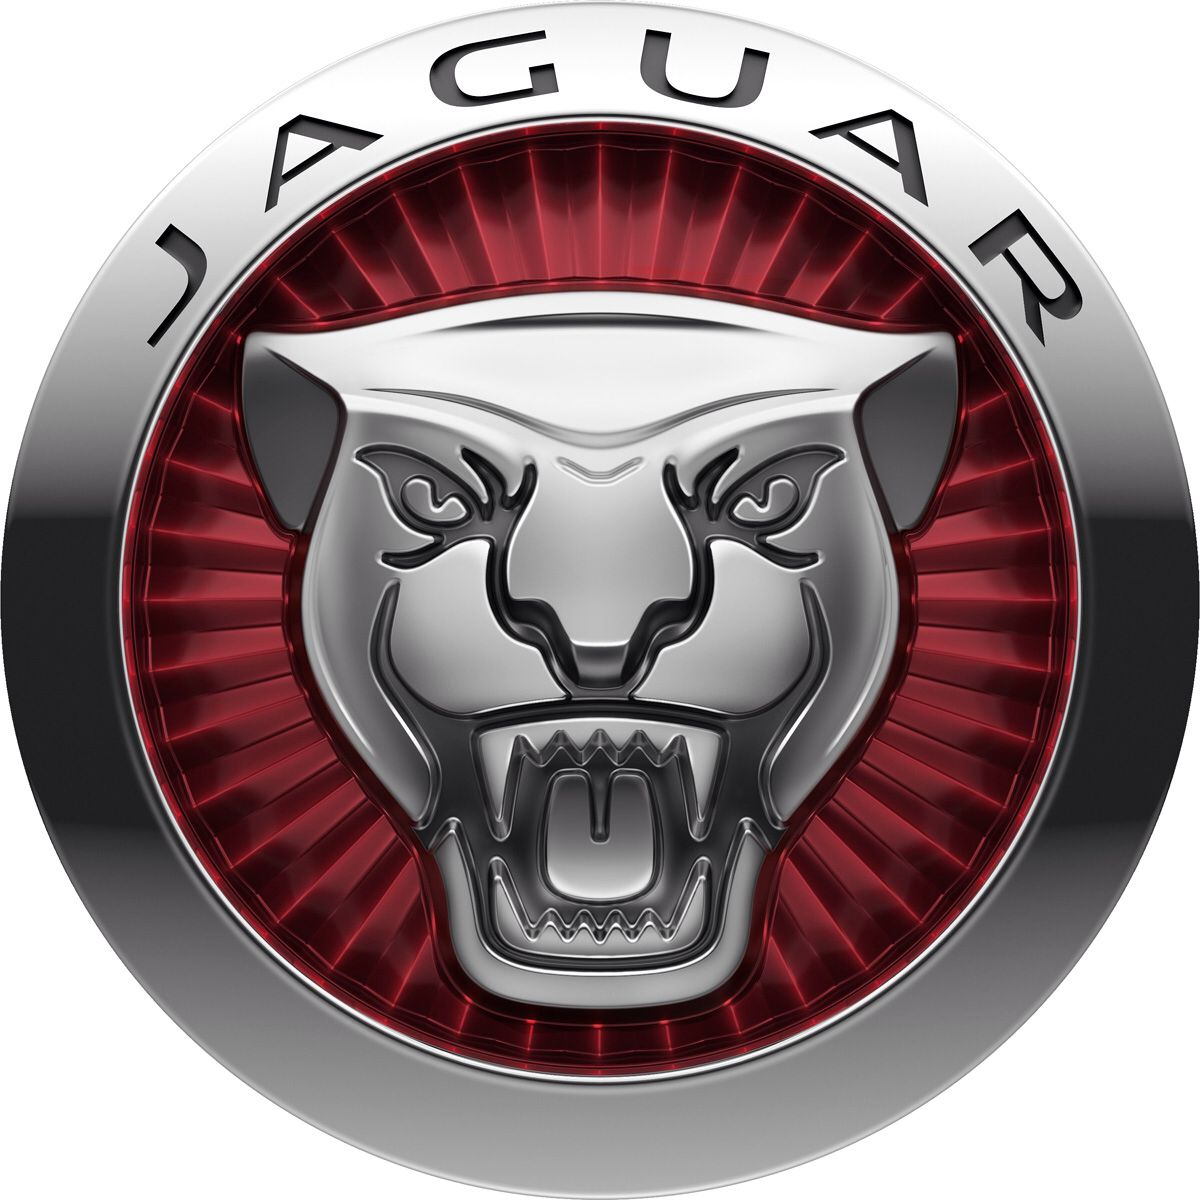 Ervaren persoon Zonder hoofd Bachelor opleiding Wat betekent het Jaguar-logo? En waarom veranderde Jaguar in 1945 zijn  naam? - AutoReview.nl